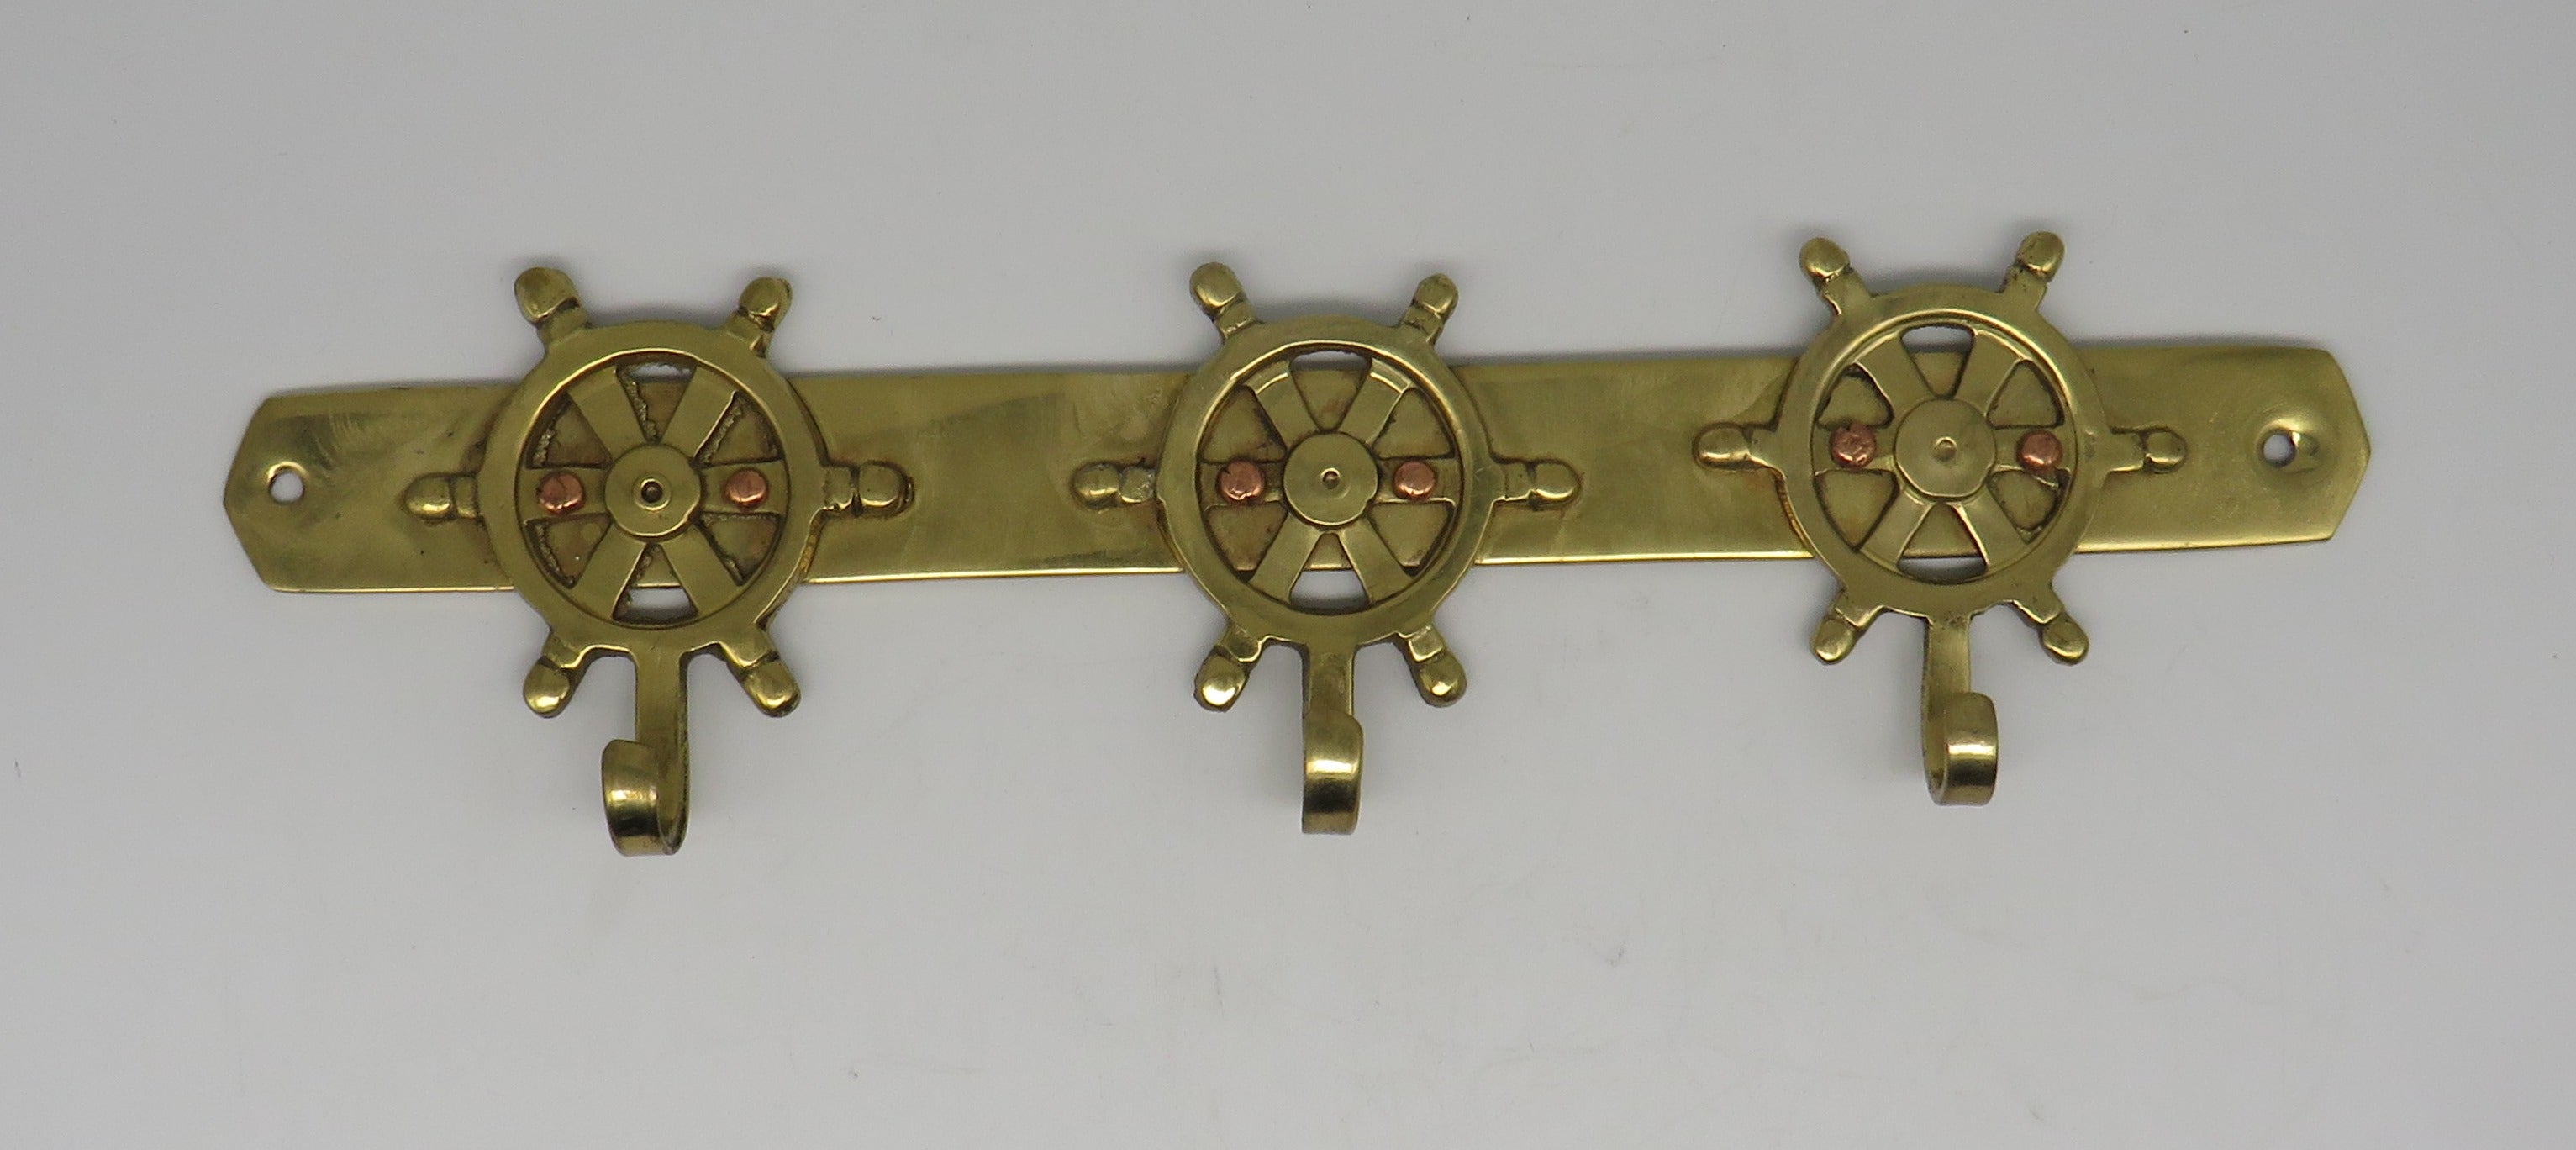 Brass Key Hook 3 Ship Wheel